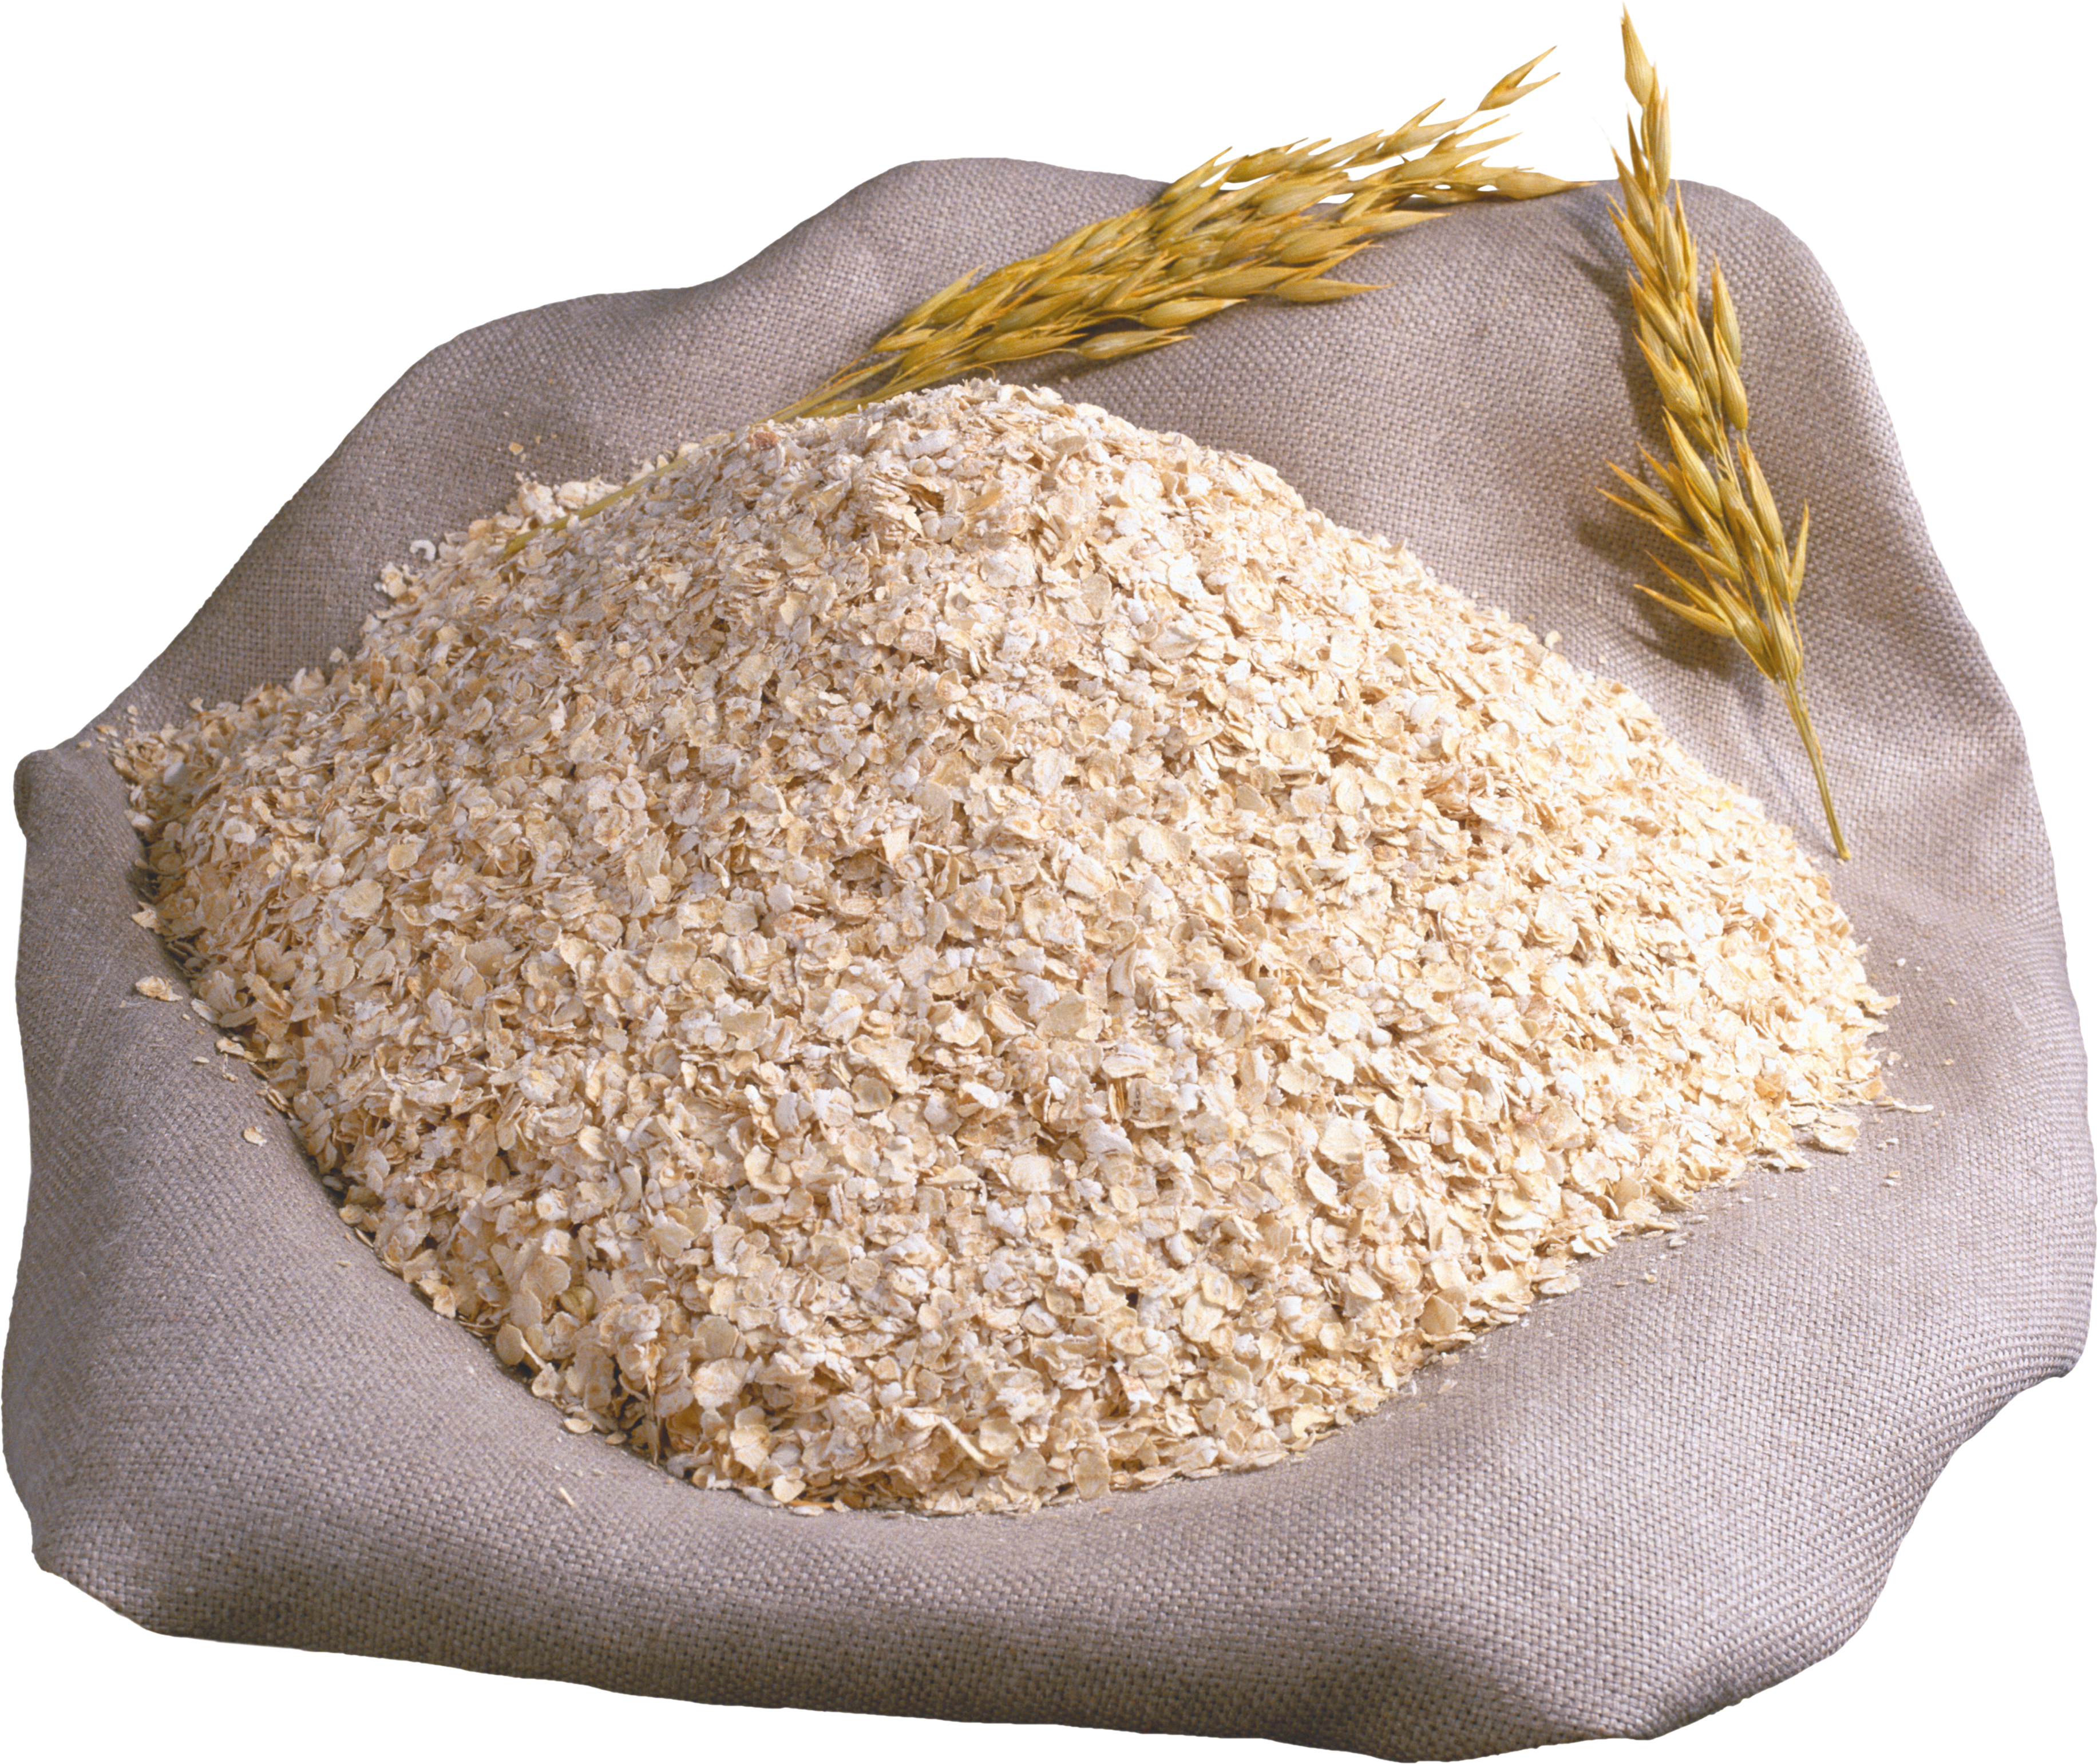 Отруби пшеничные, мешок (25 кг). Крупа пшеничная мешок 50кг АГРОСА. Отруби, крупа пшеничная. Мешки с крупой. Е пшеничный